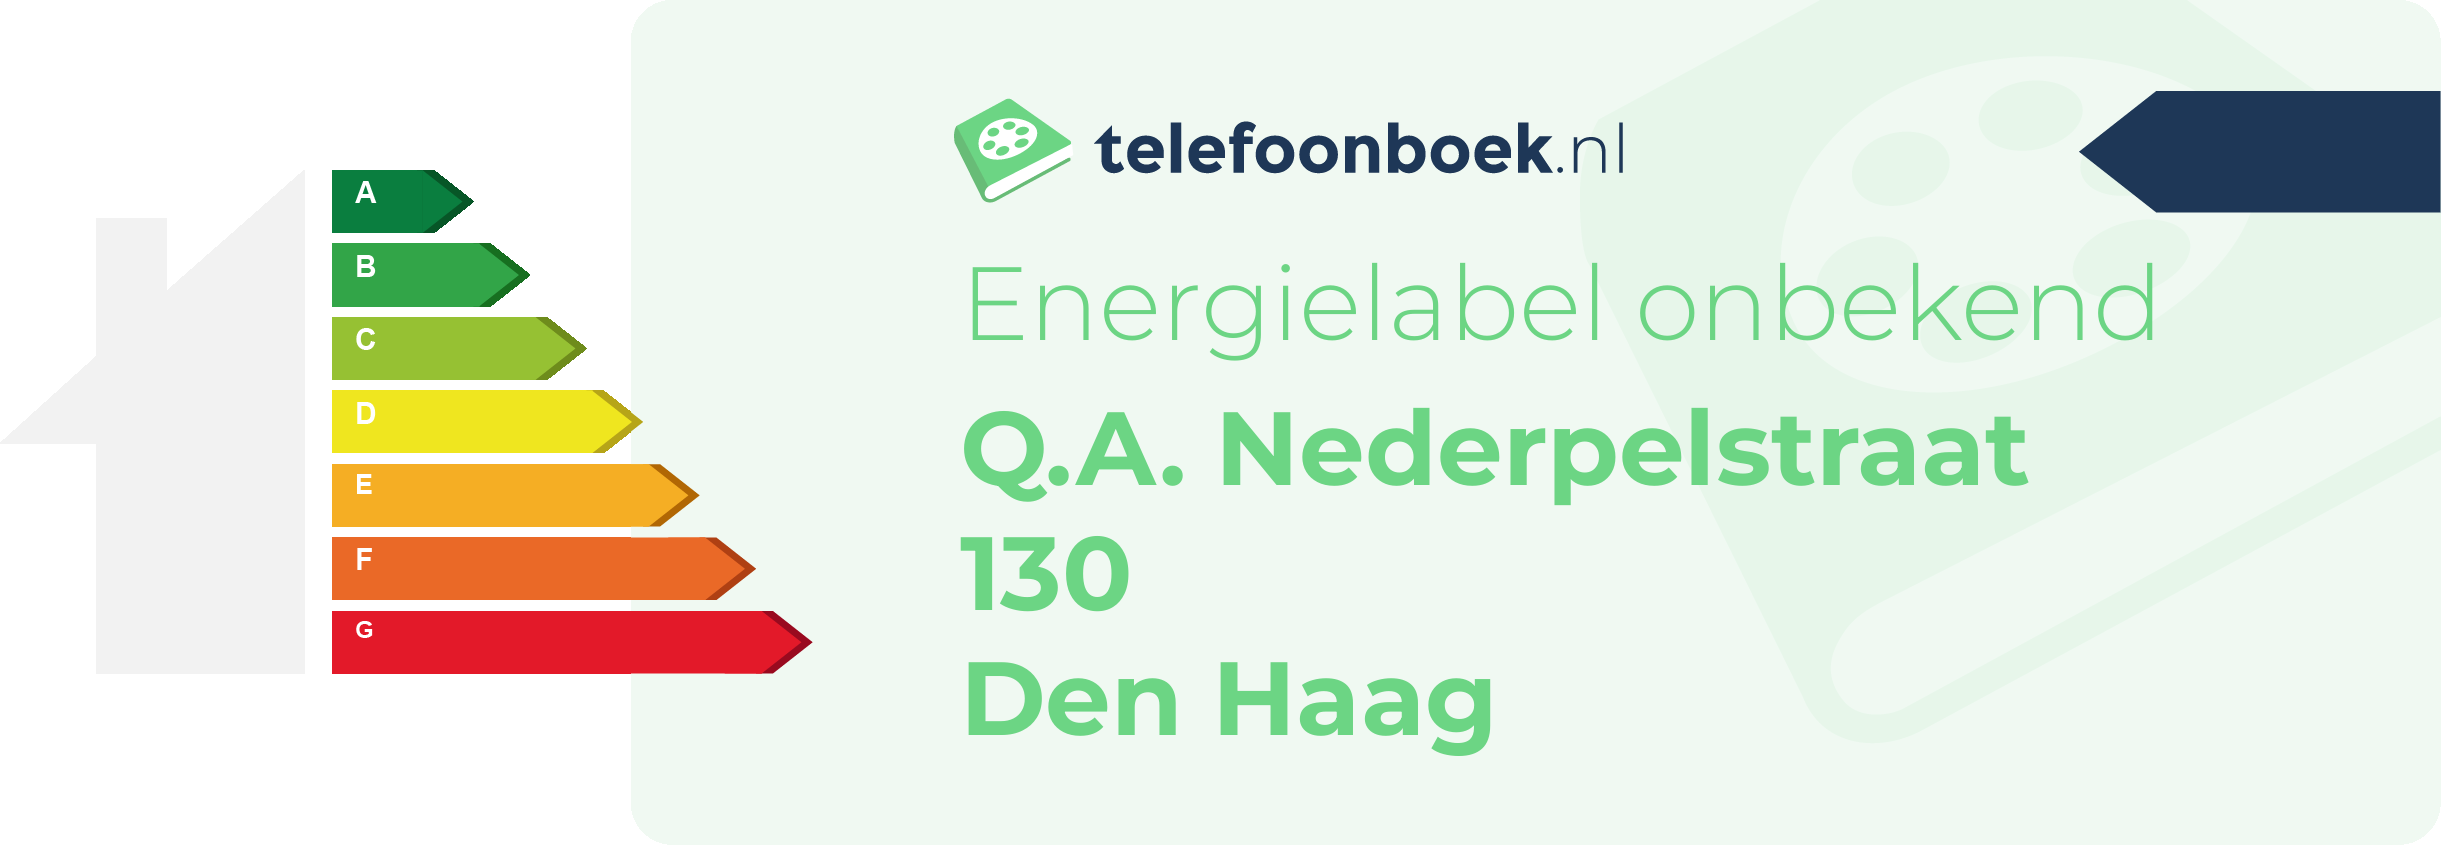 Energielabel Q.A. Nederpelstraat 130 Den Haag